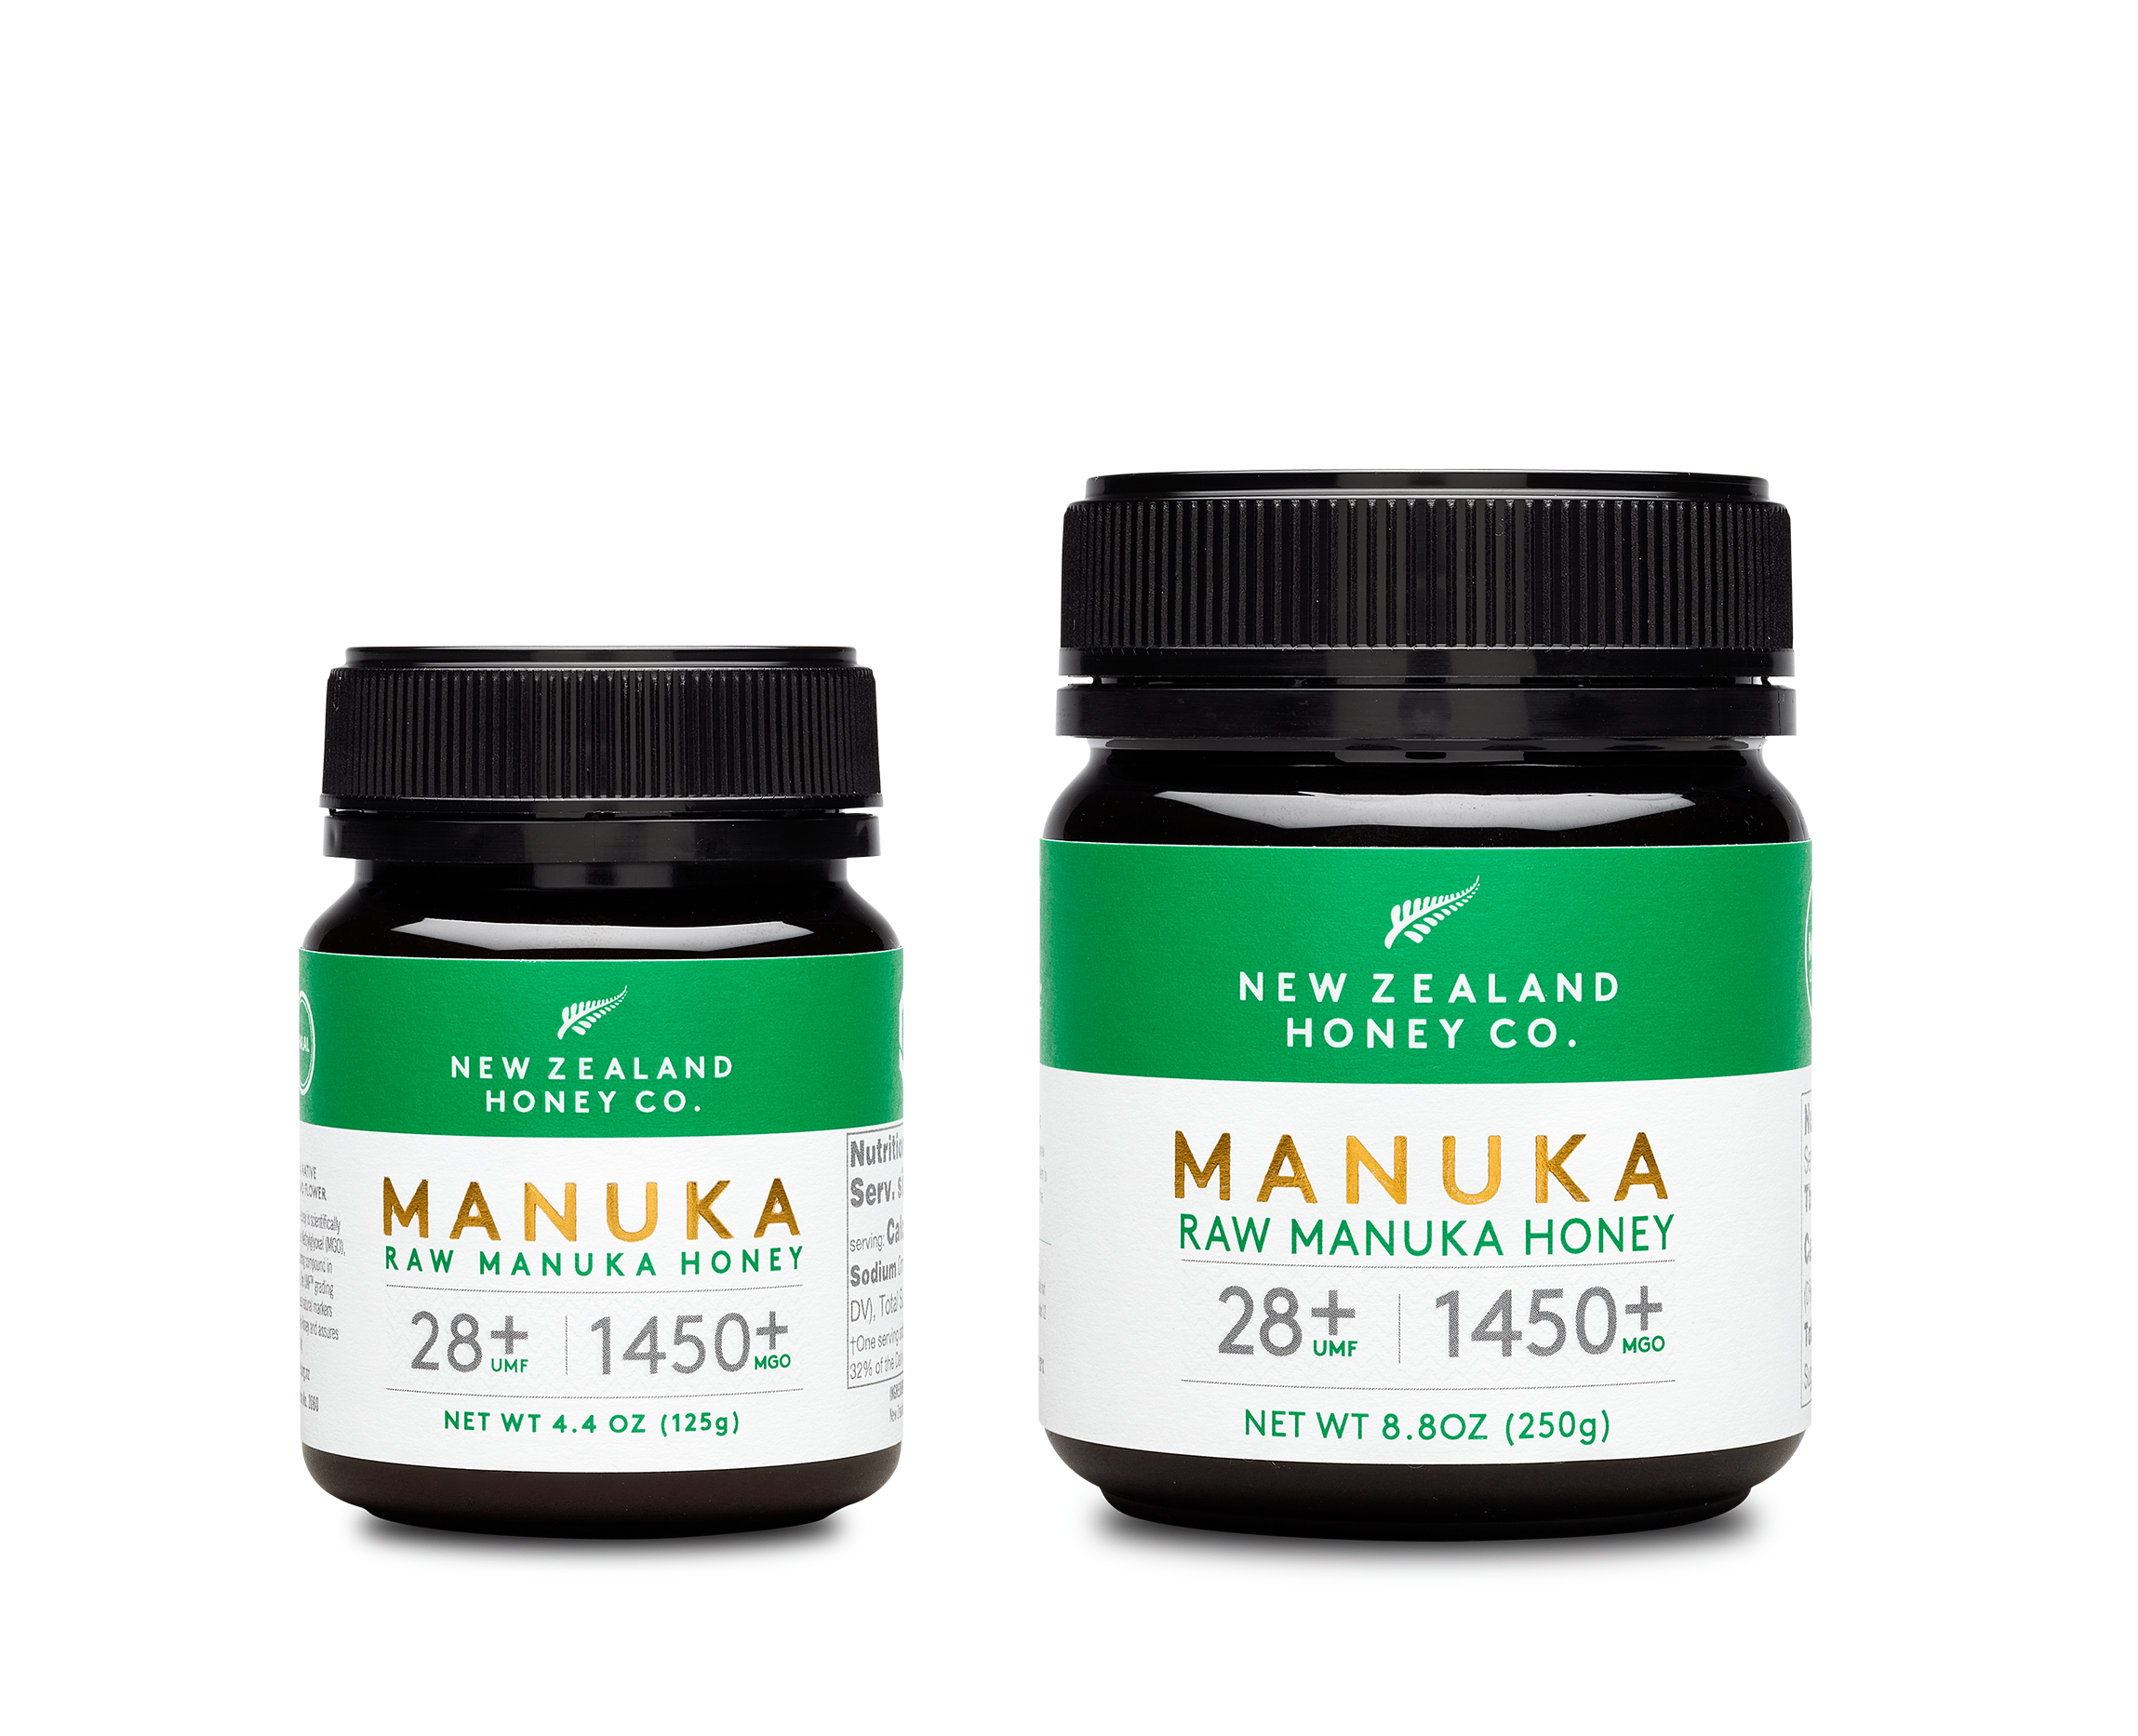 Manuka Honey UMF™ 28+ | MGO 1450+ [LIMITED EDITION]